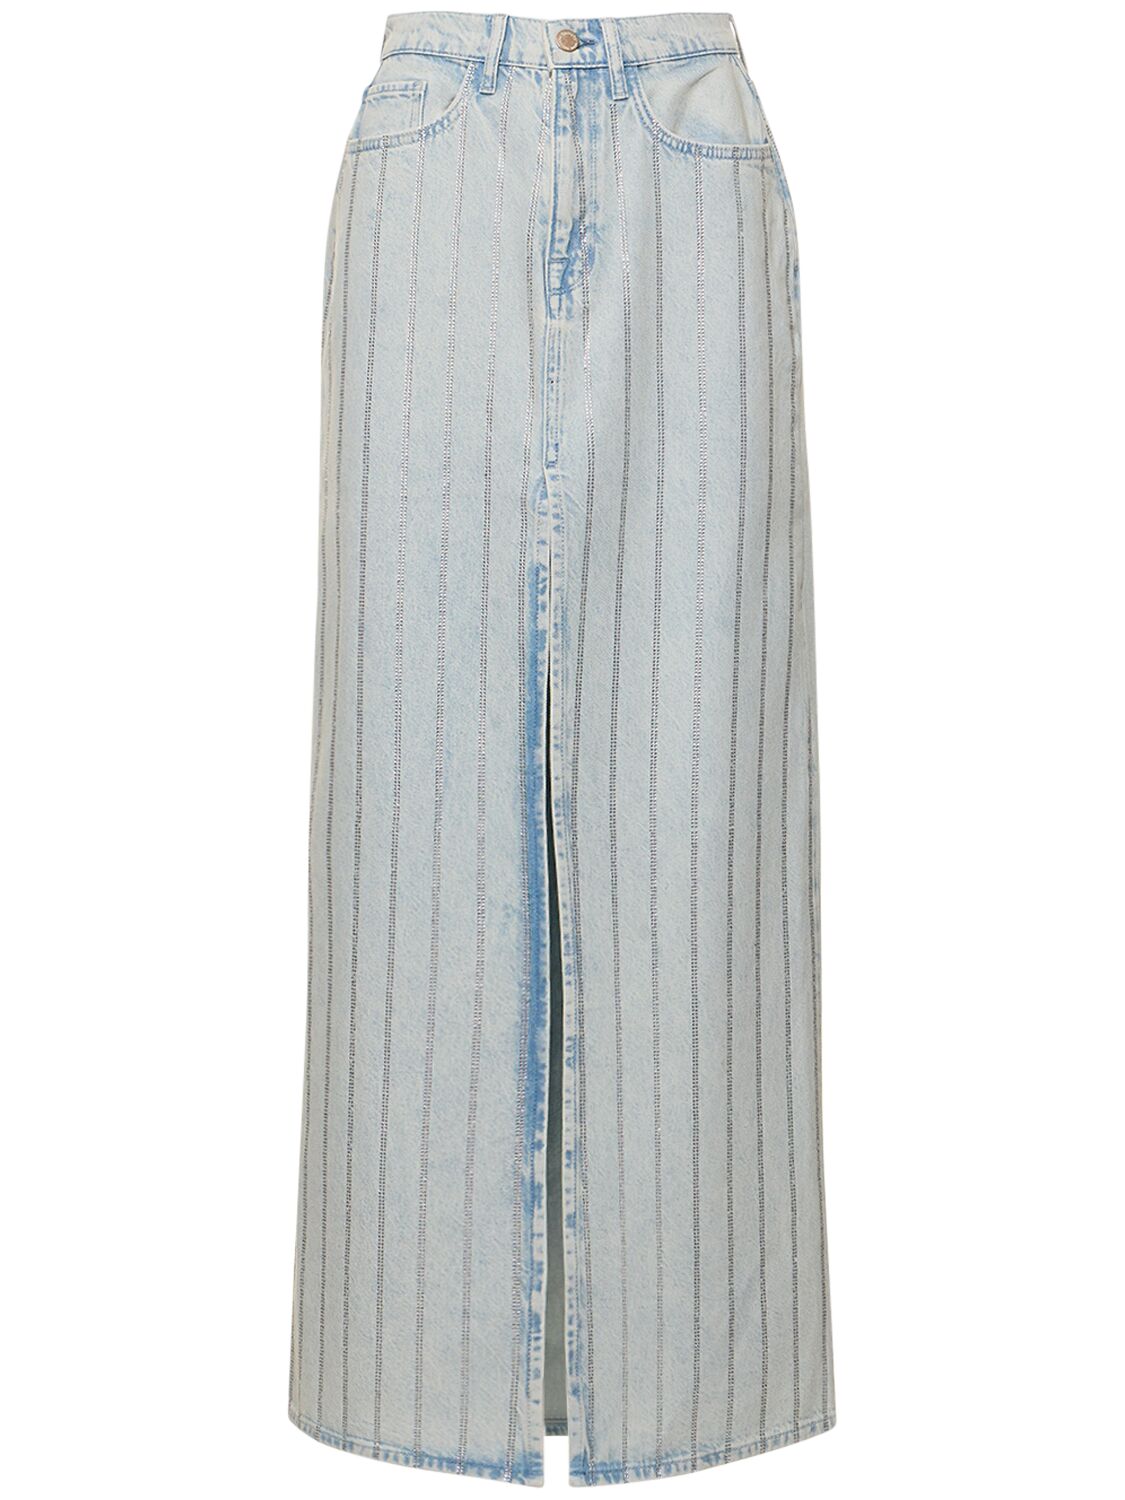 Image of Ms. Sofiane High-rise Slit Denim Skirt